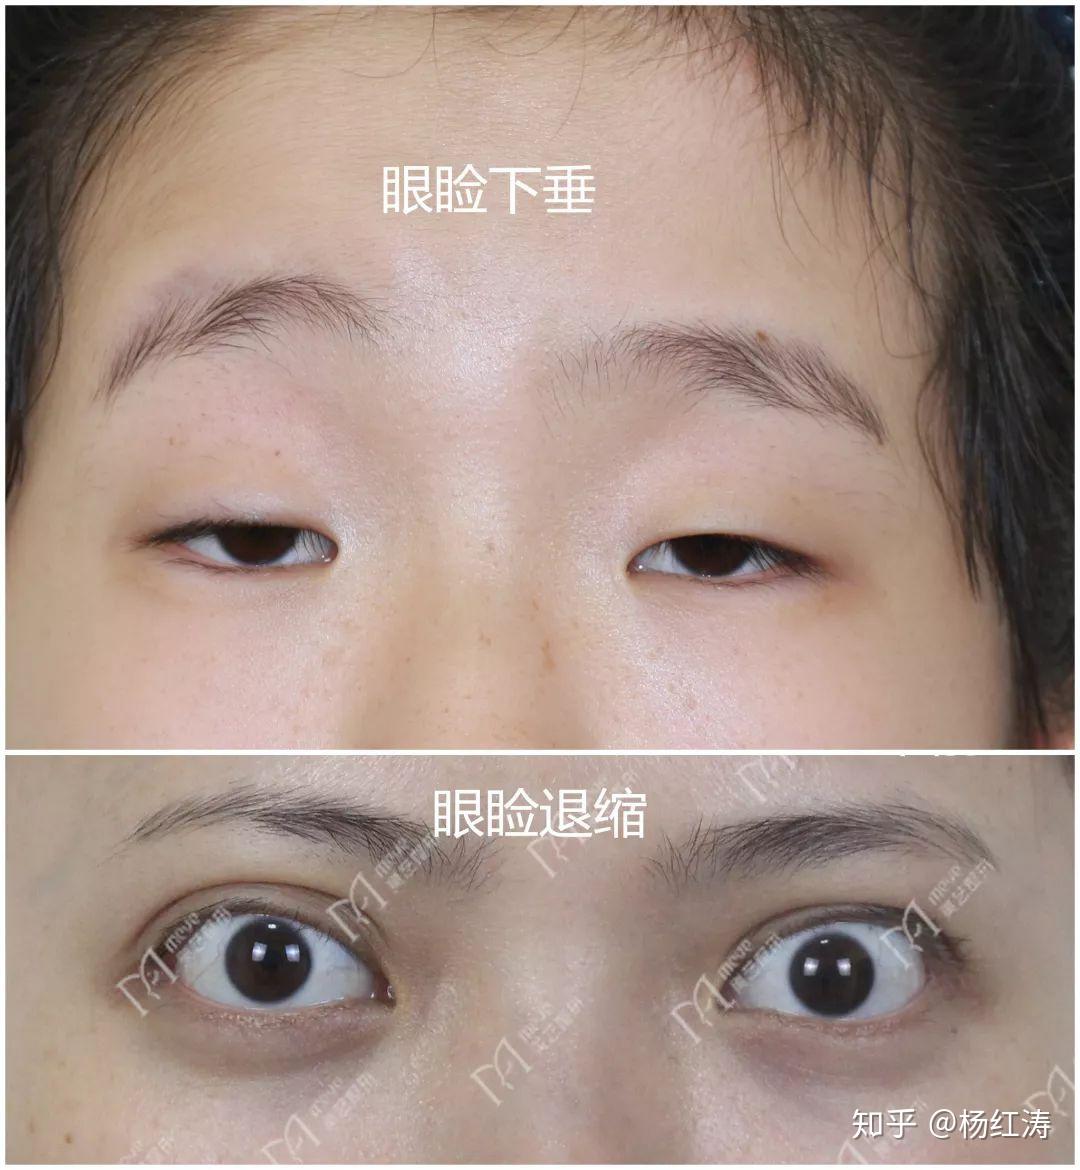 福州爱尔眼科医院成功为一五岁男孩进行眼部手术-医院汇-丁香园